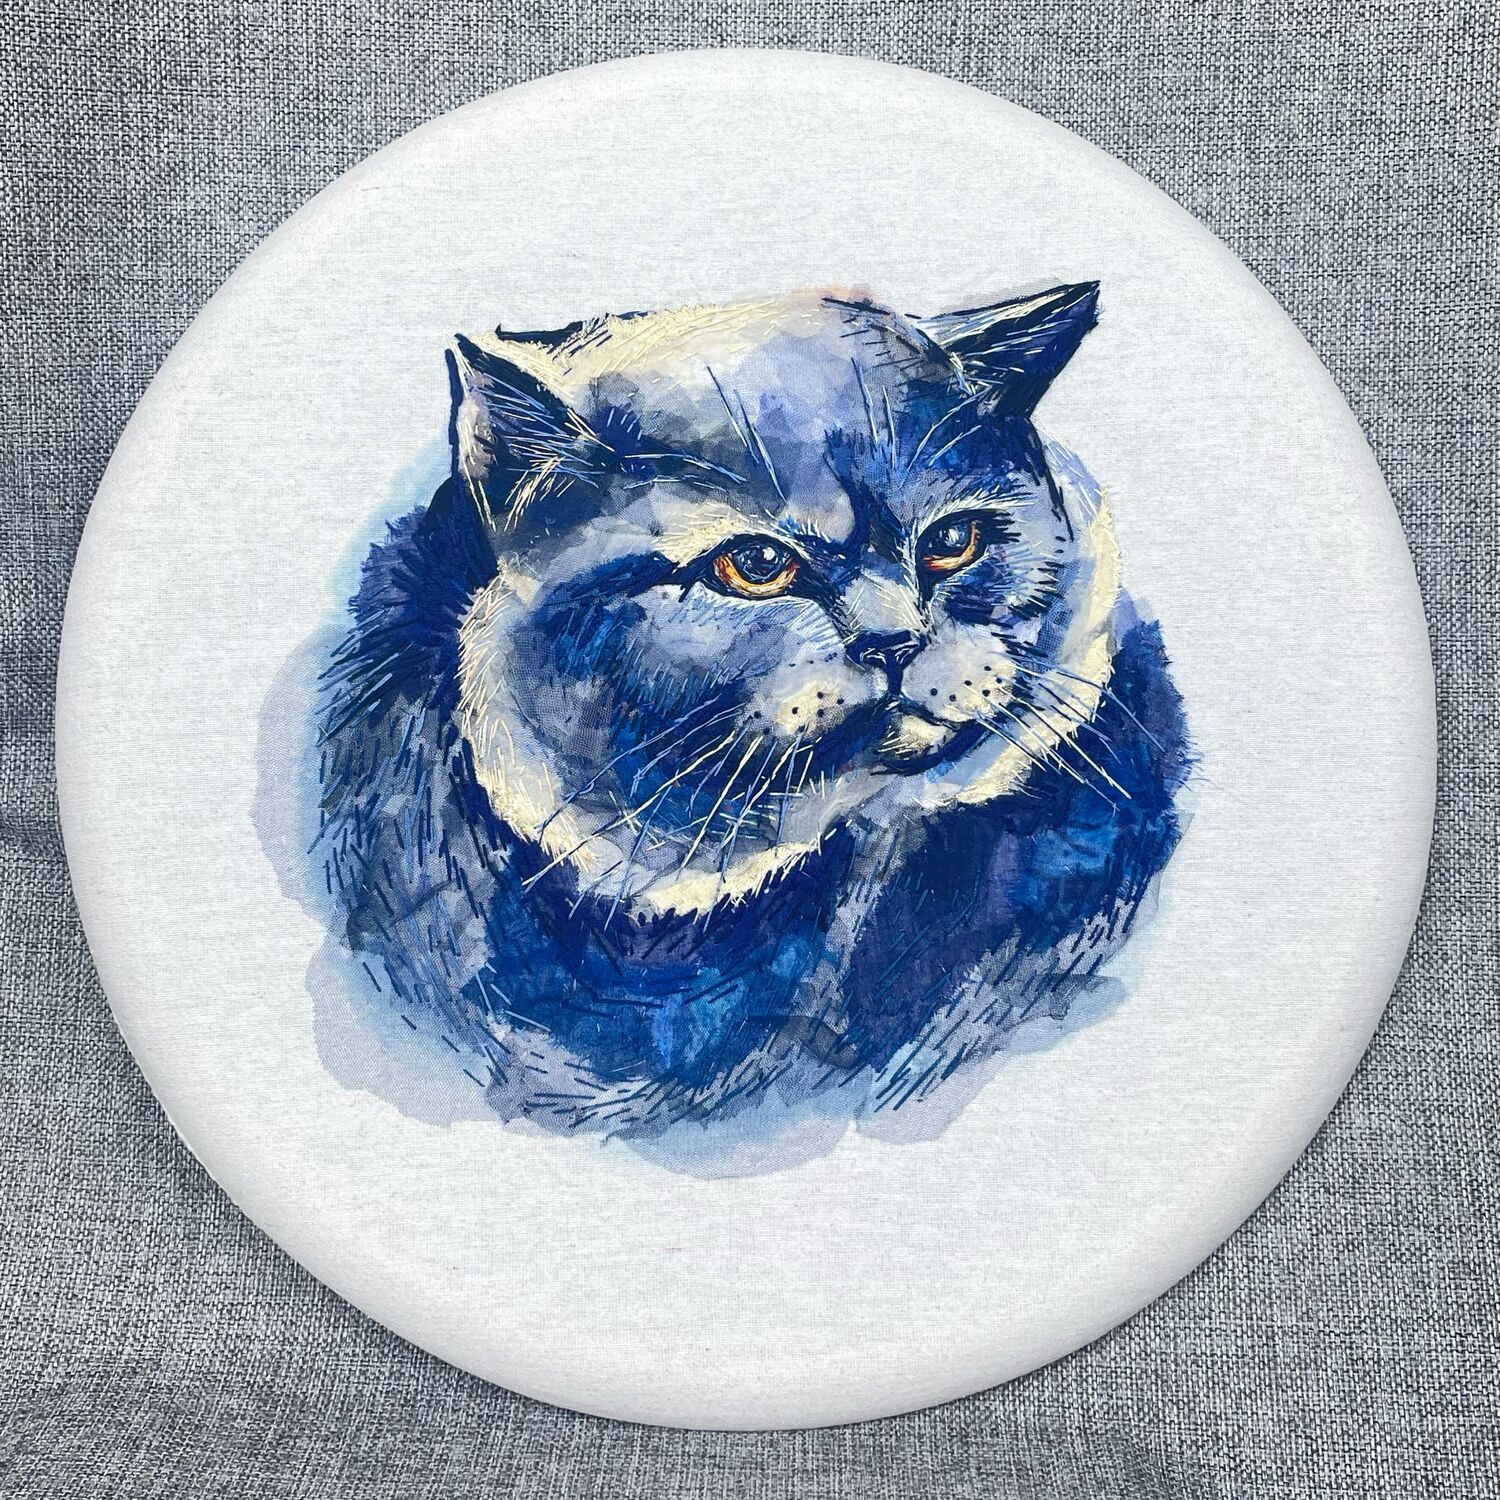 Наборы для вышивания, сюжет кошки и коты - купить в интернет-магазине 